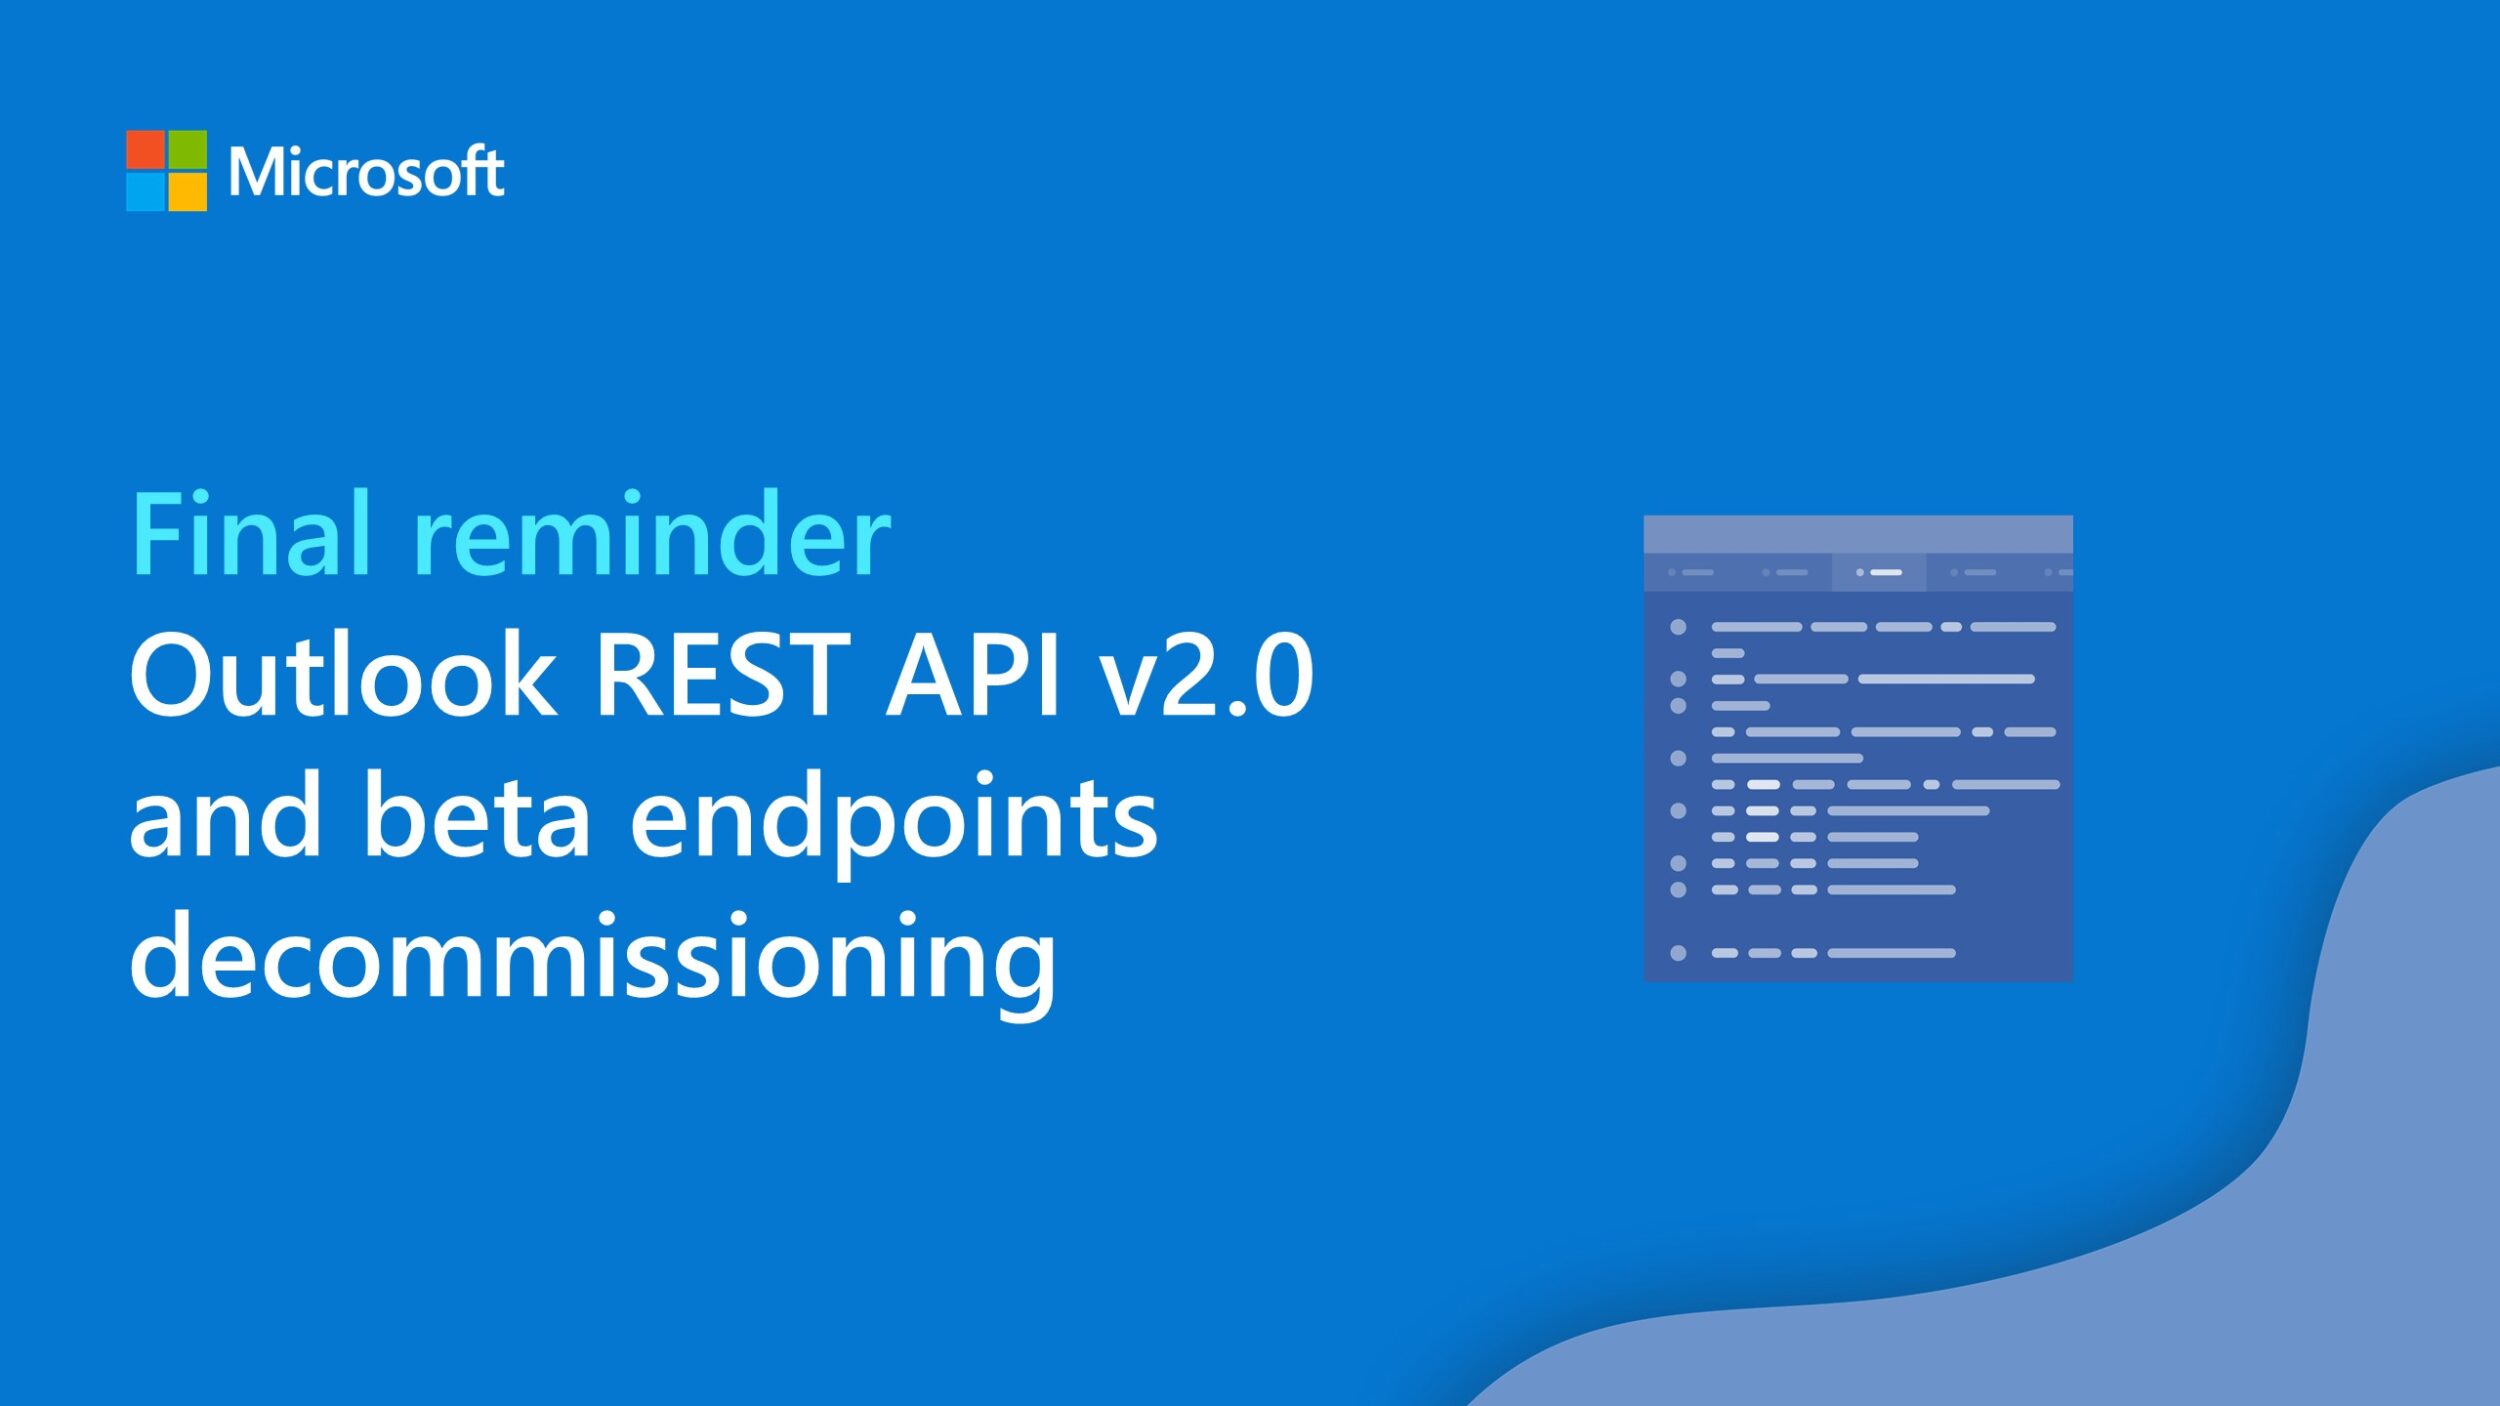 Final reminder: Outlook REST API v2.0 and beta endpoints decommissioning